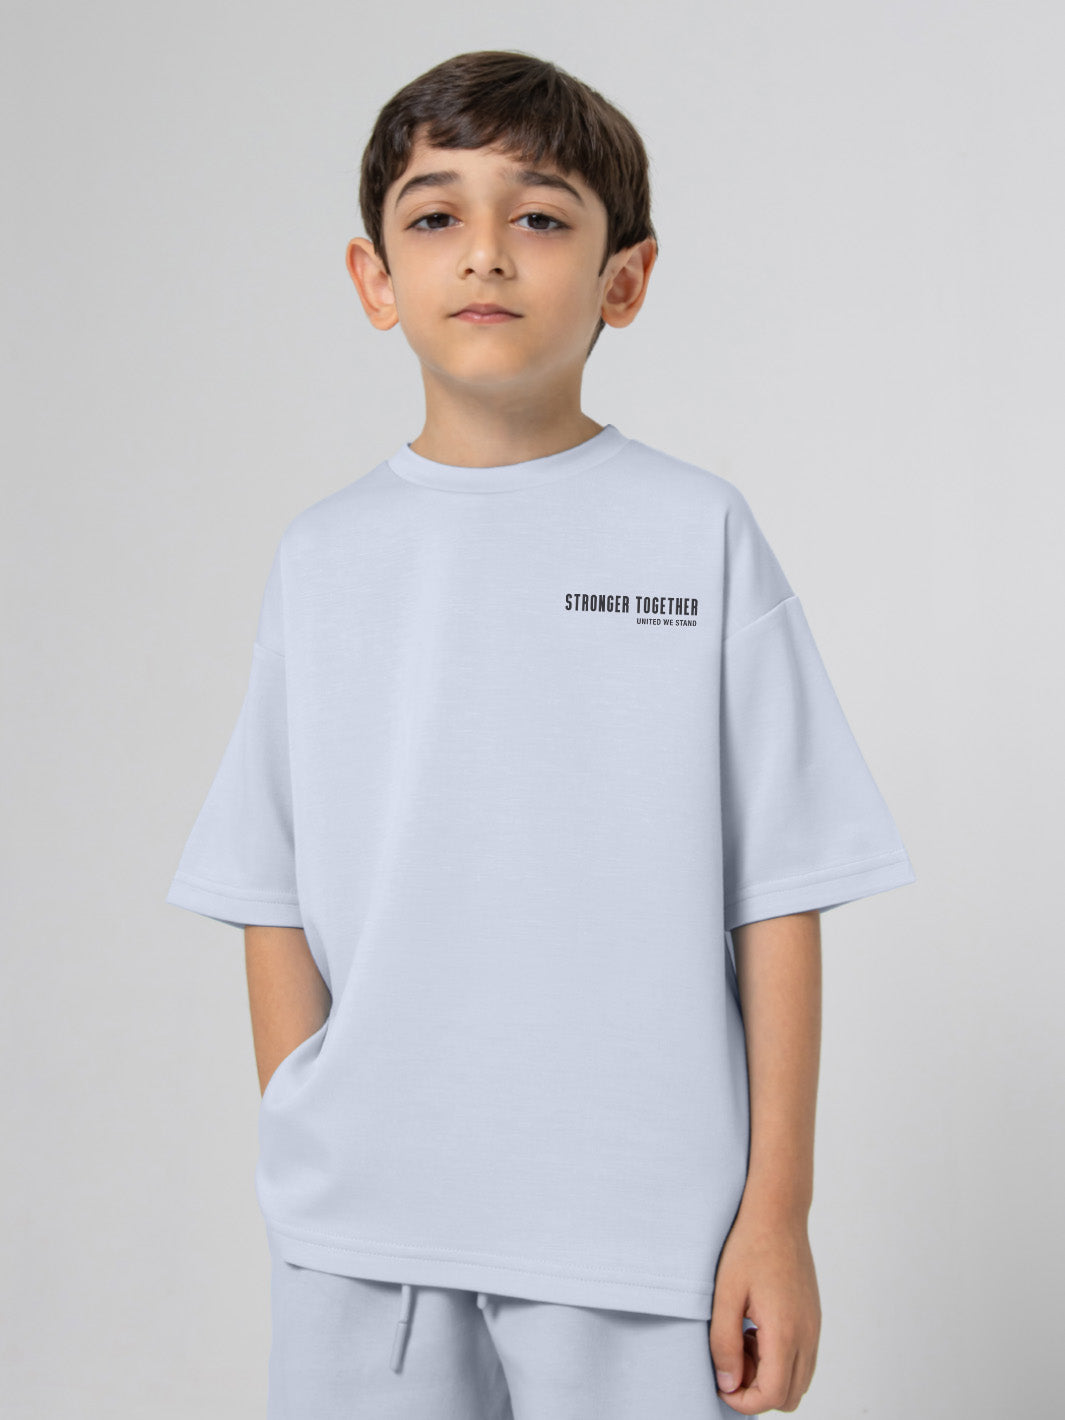 Kids Oversized Soft T-Shirt - Stronger Together